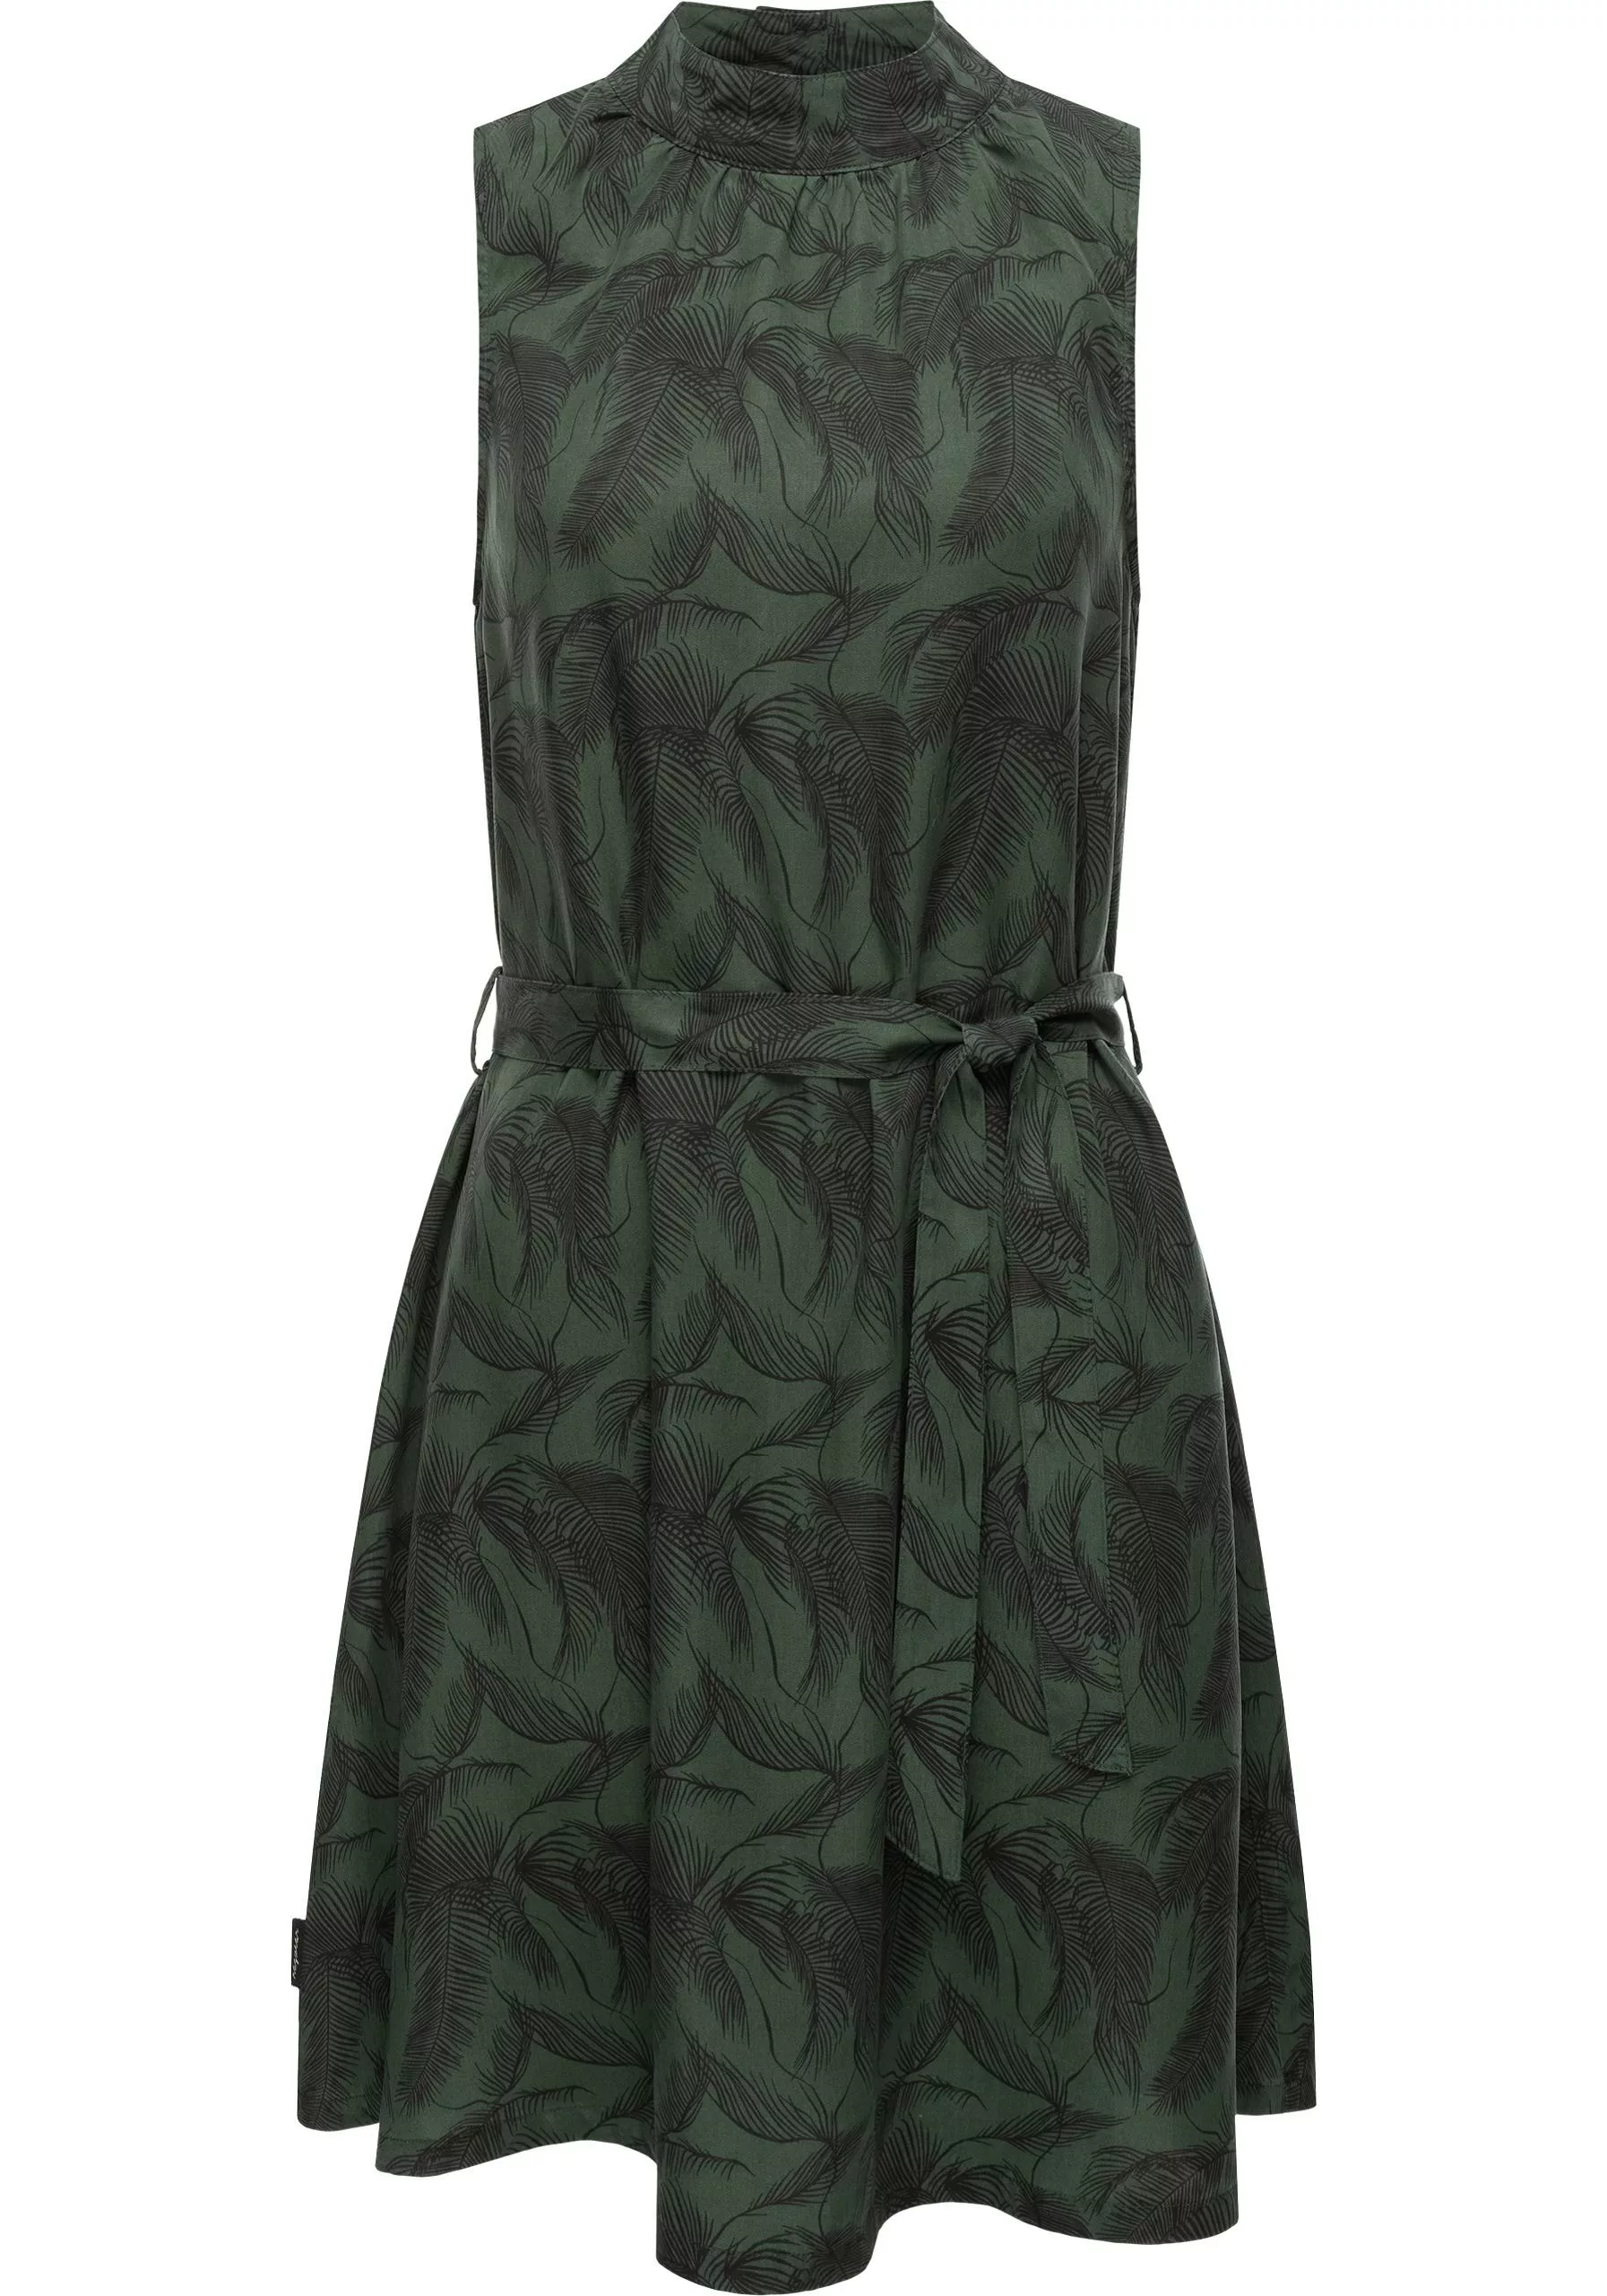 Ragwear Blusenkleid "Angyc Organic", hochgeschlossenes Sommerkleid mit Bind günstig online kaufen